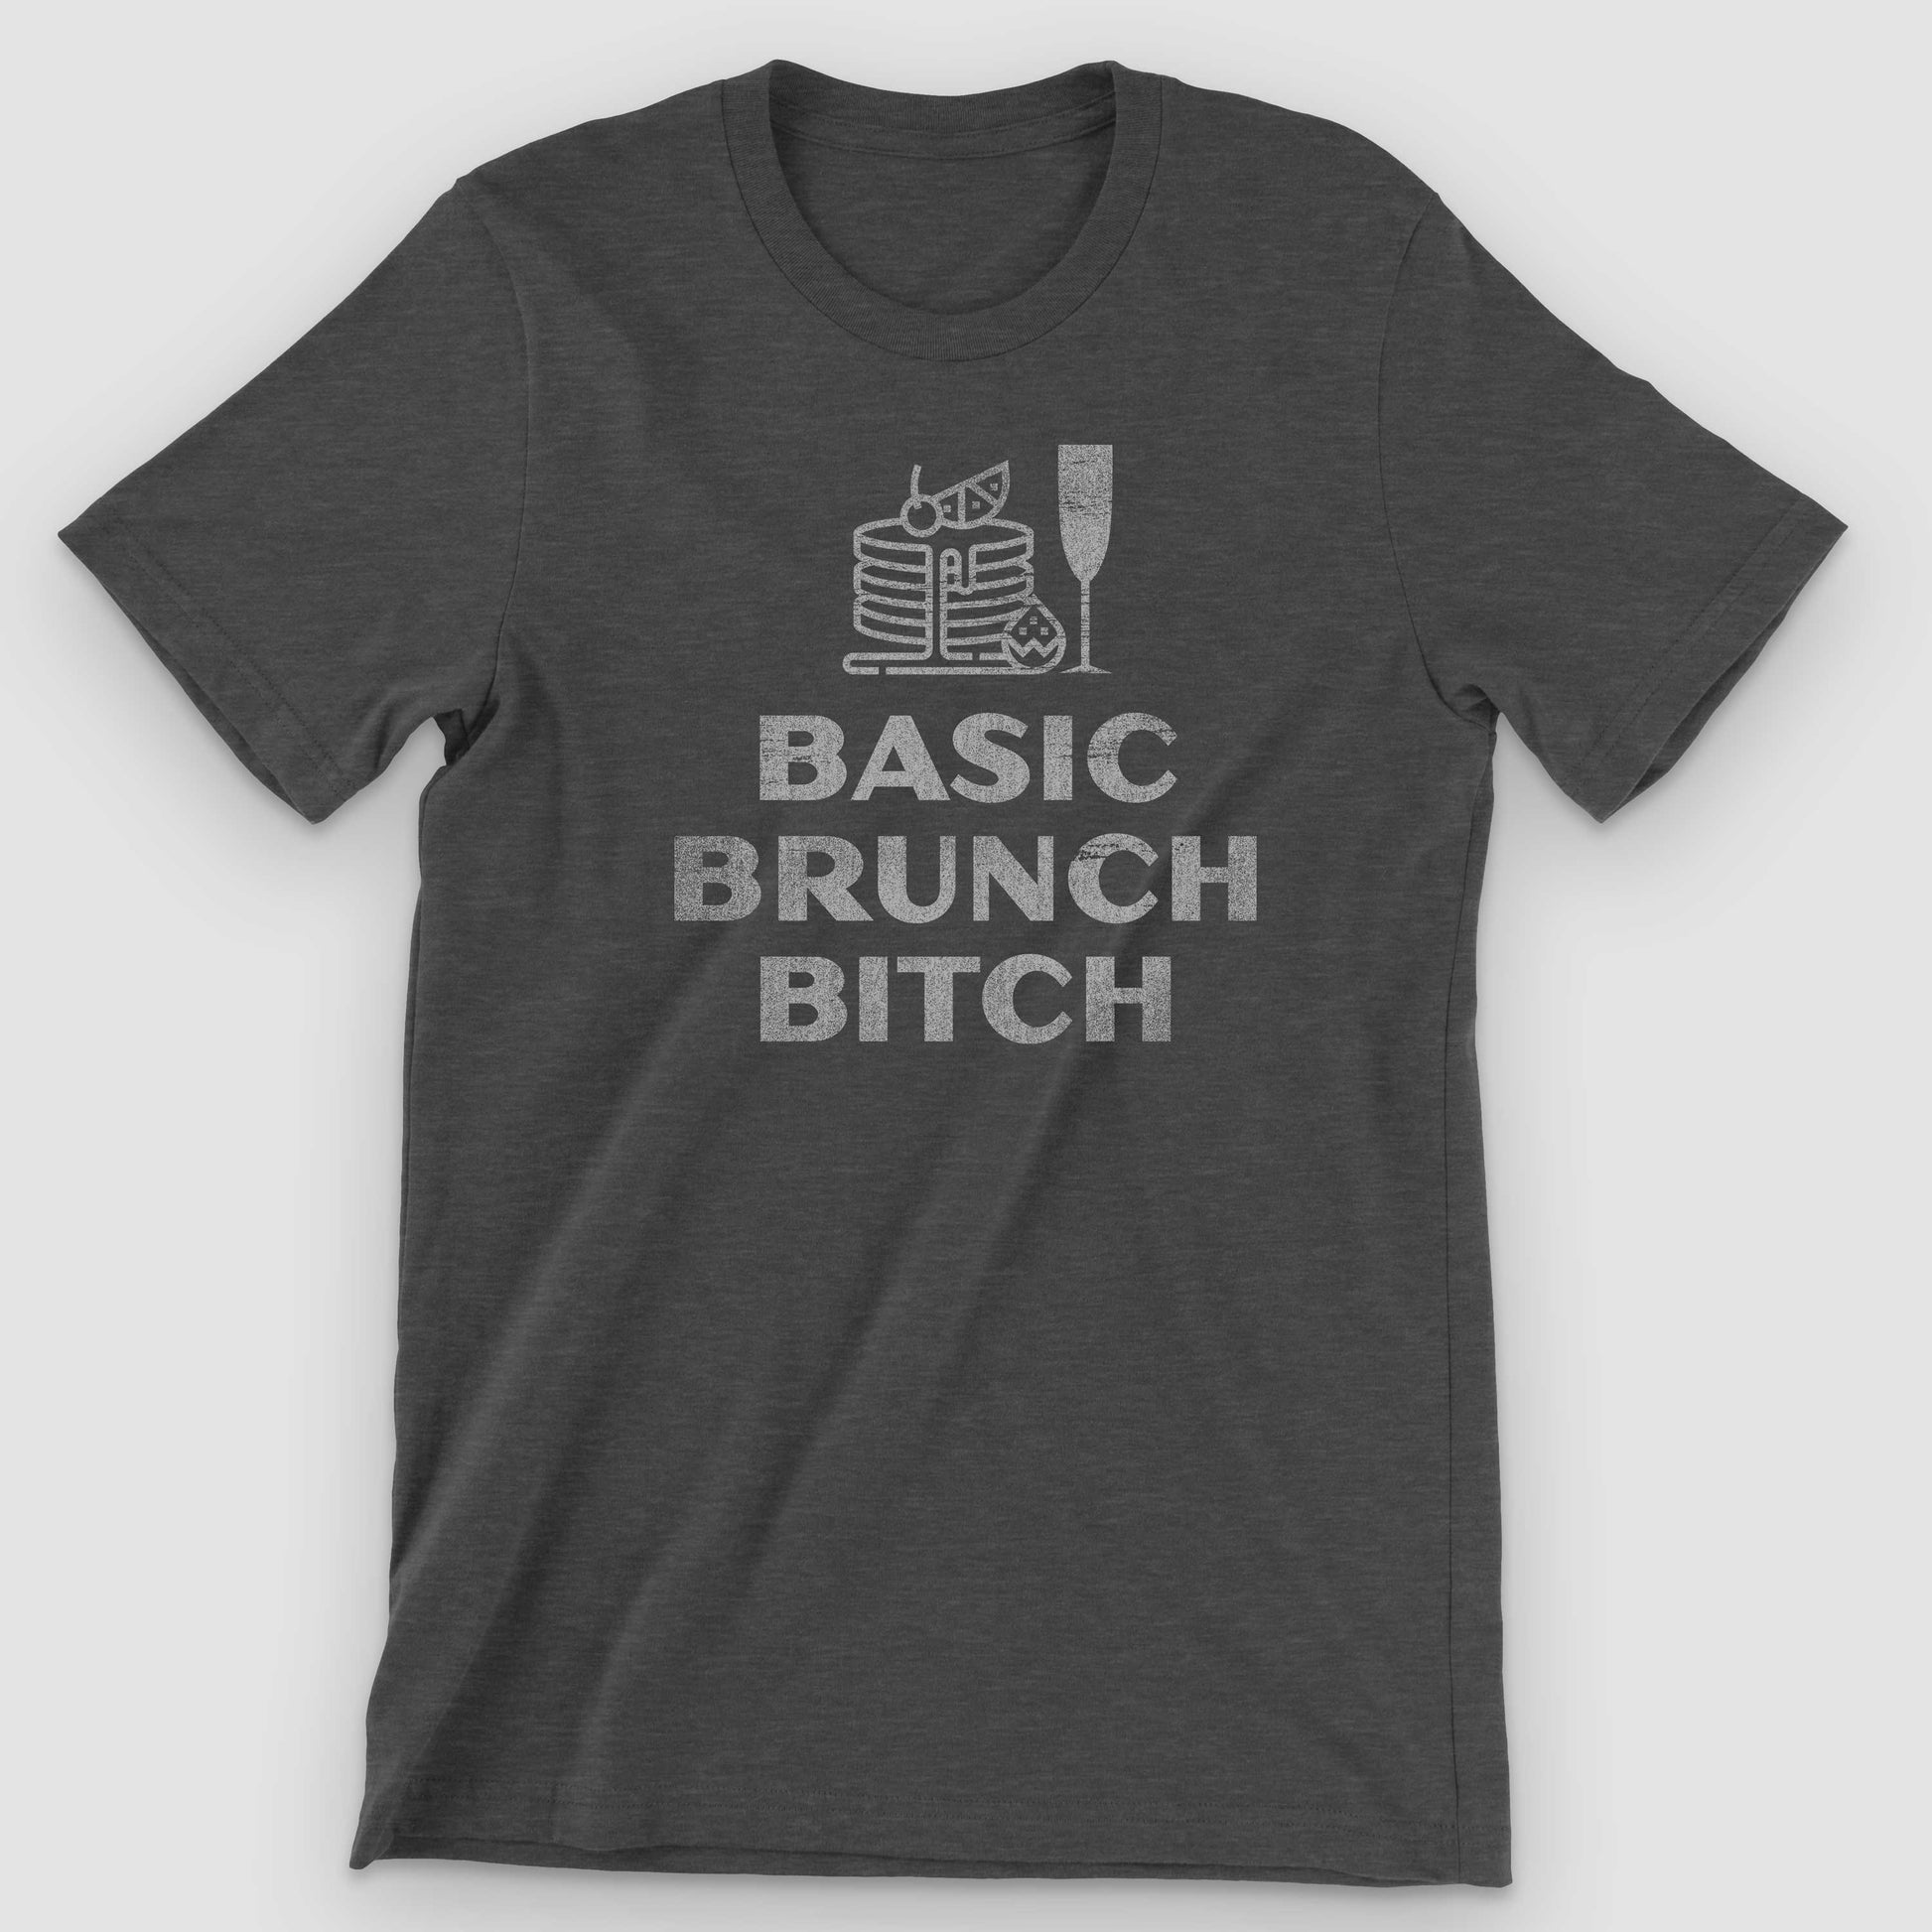 Dark Grey Heather Basic Brunch Bitch Graphic T-Shirt by Snaxtime